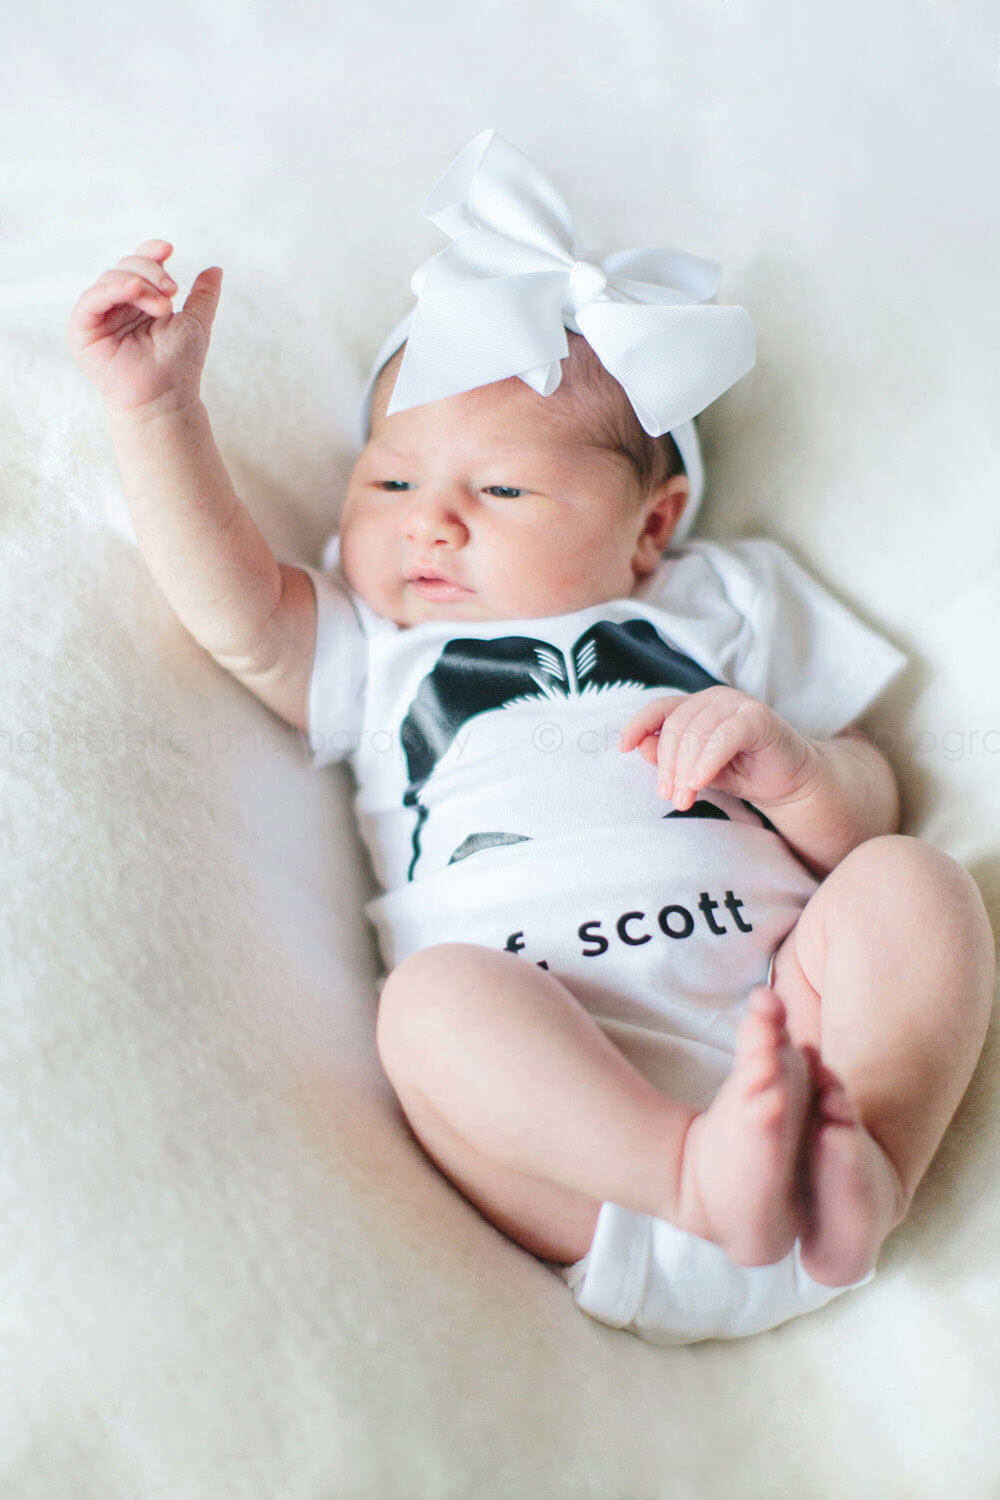 baby wearing f scott fitzgerald onesie